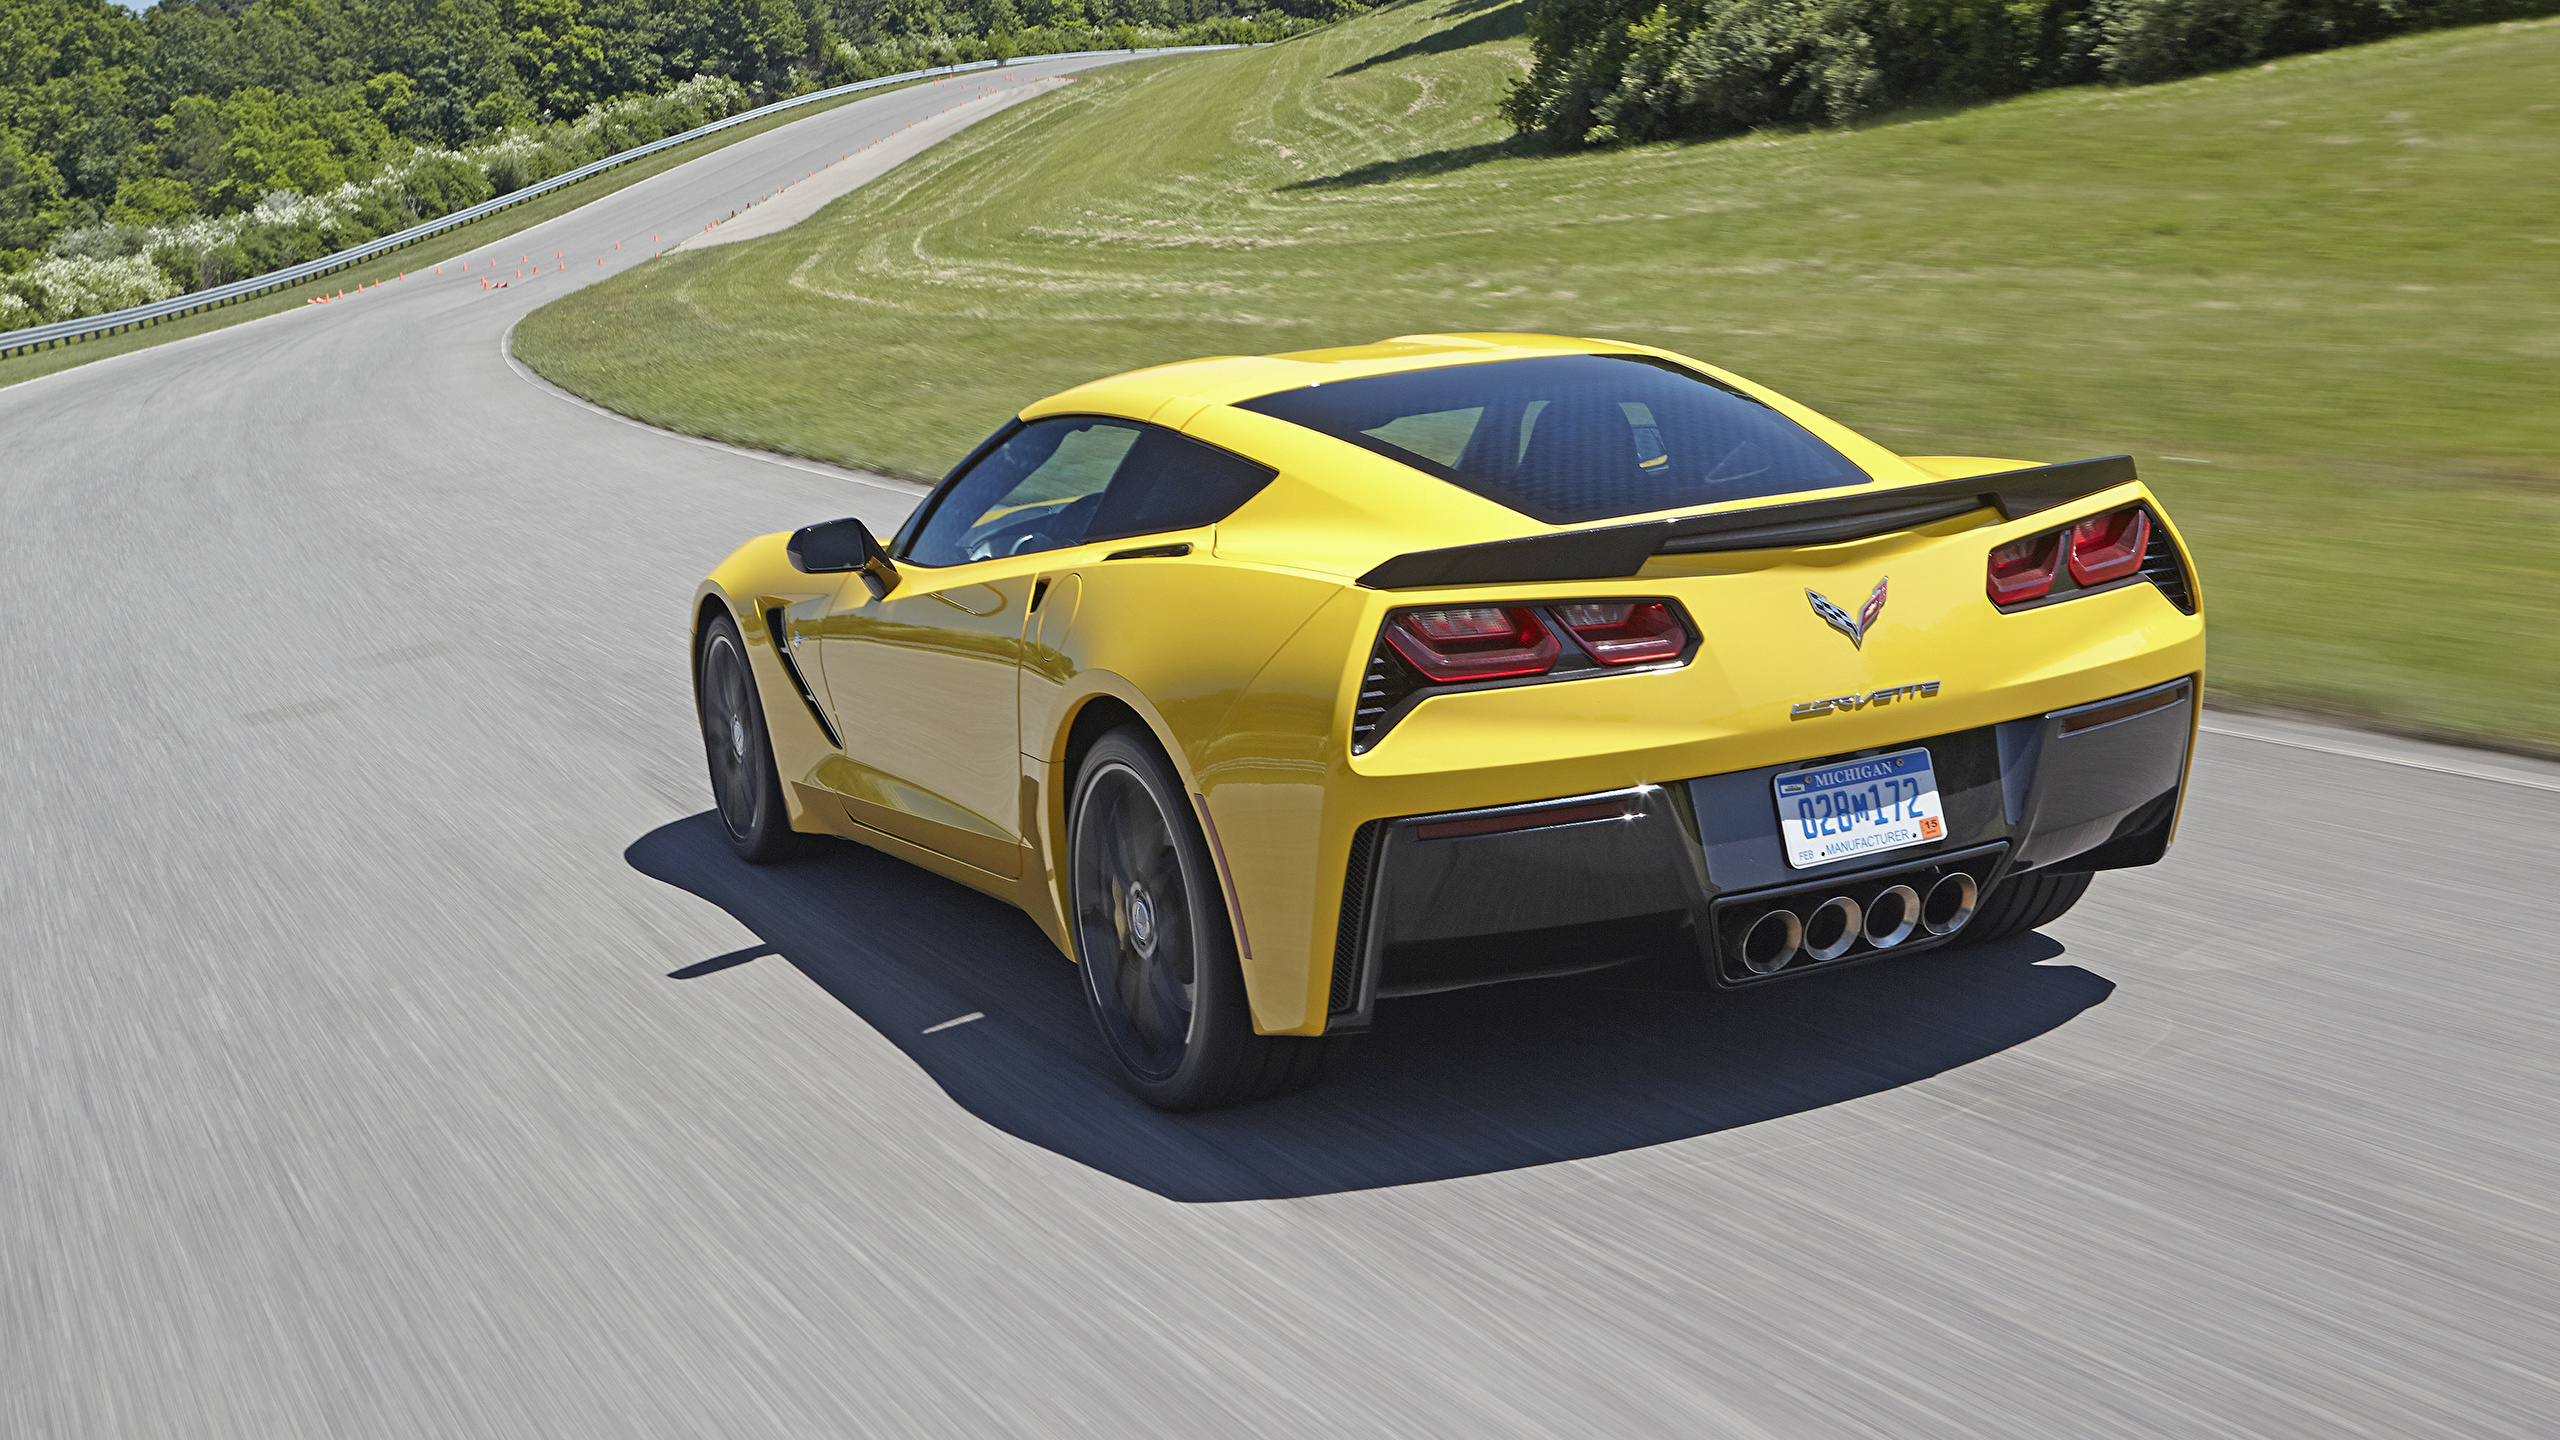 Картинки Chevrolet Corvette c7 Stingray желтые Дороги Движение машина вид сзади 2560x1440 Шевроле желтая Желтый желтых едет едущий едущая скорость авто Сзади машины Автомобили автомобиль